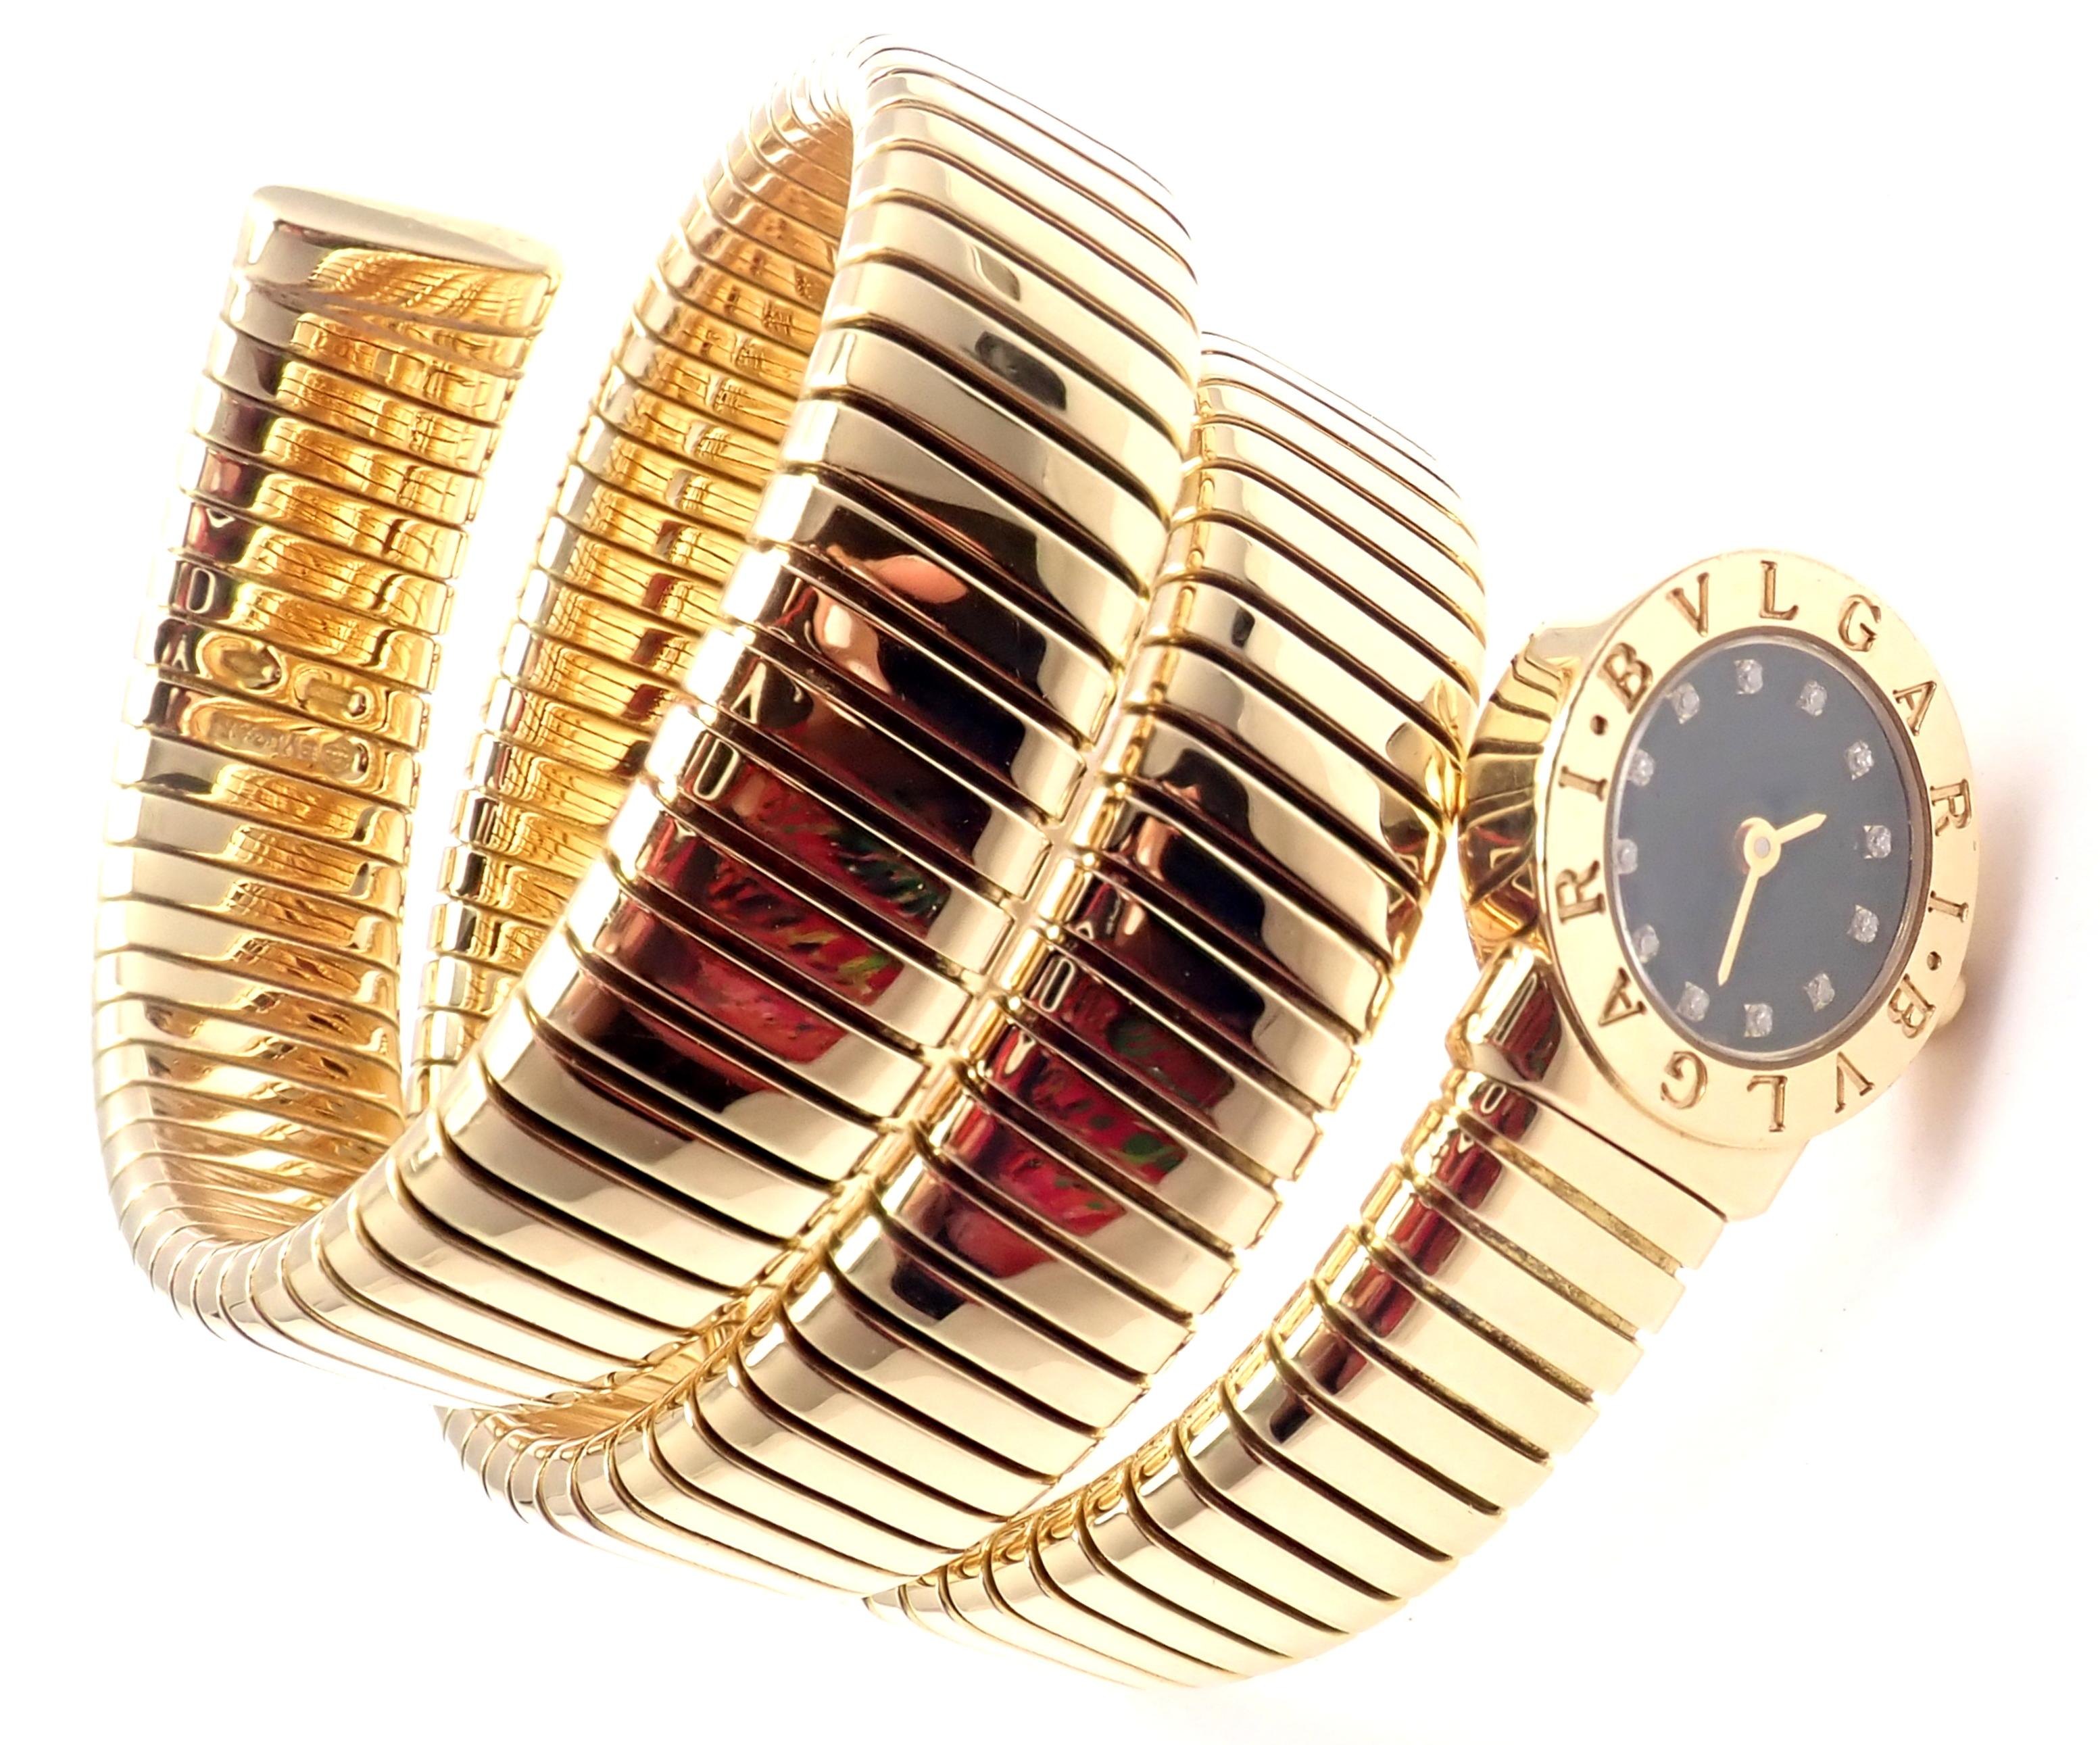 Bulgari lady's 18k yellow gold Diamond Tubogas Serpent Snake bracelet watch. 
With 12 Round brilliant cut diamonds VVS1 clarity E color
Details:
Model: BB191T
Movement Type: Quartz
Case Size: 3/4